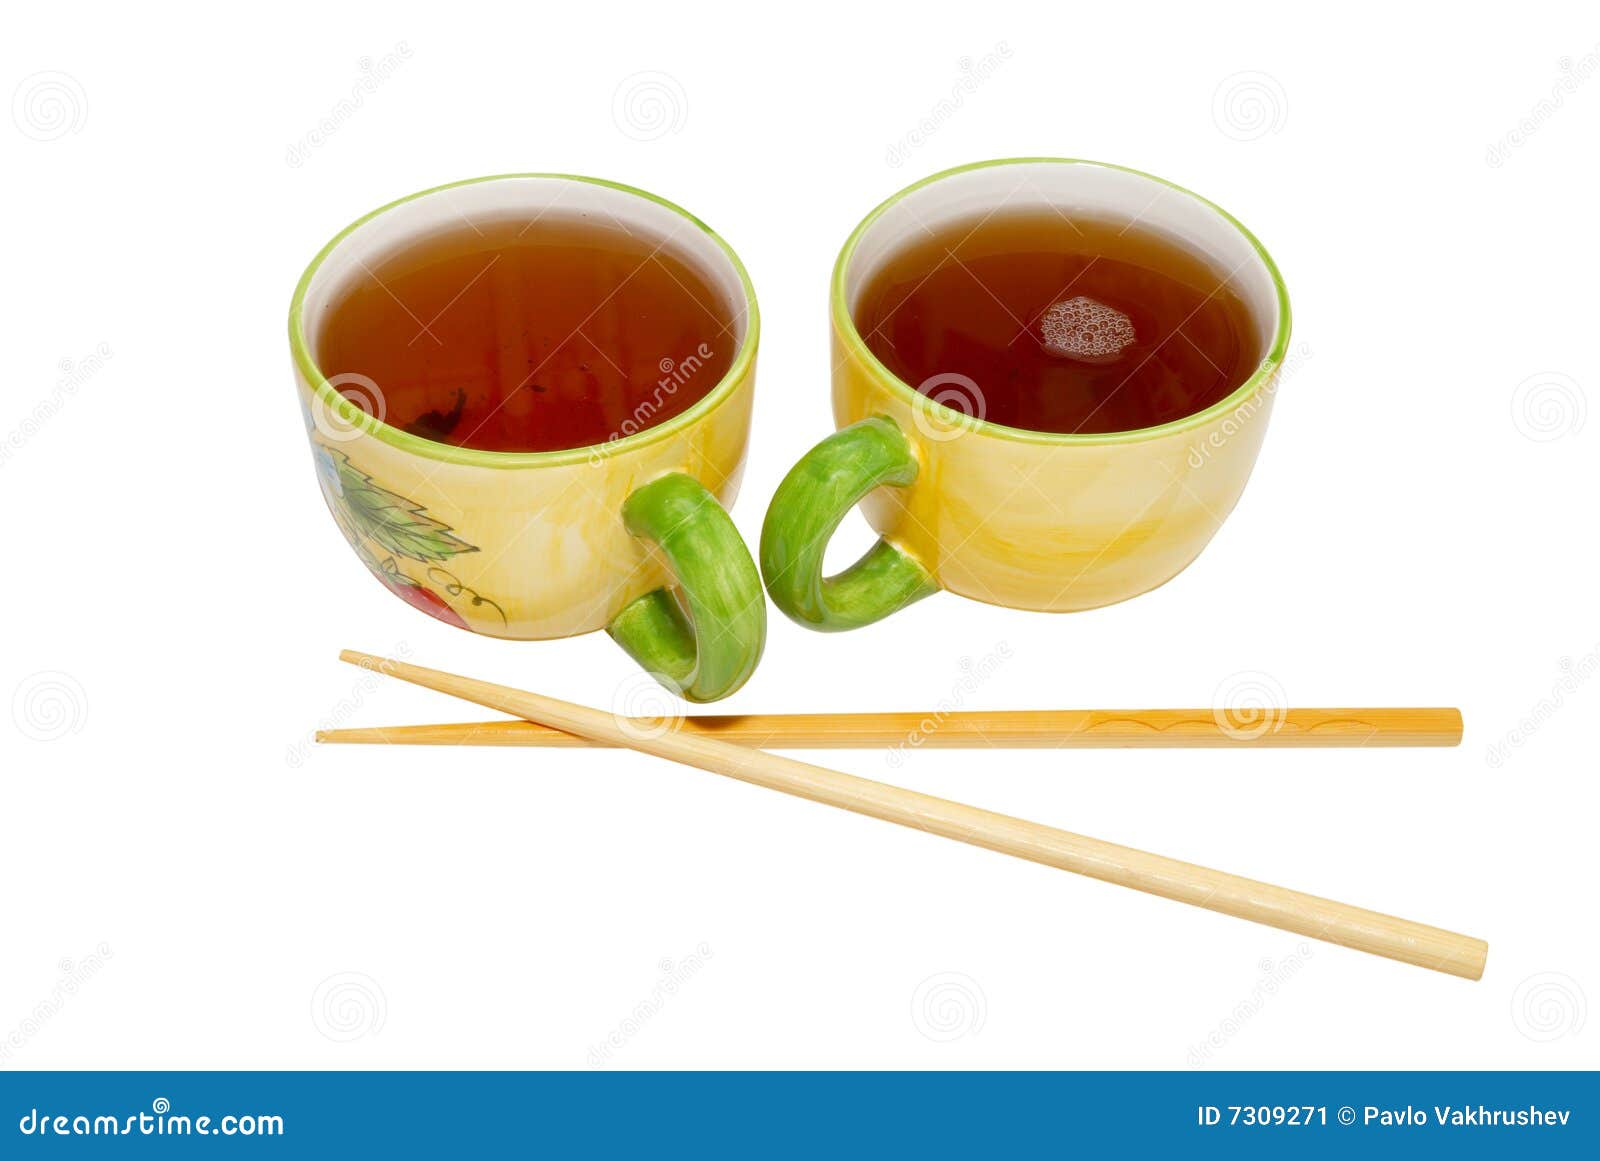 Где купить чай на палочке. Чайные палочки чай. Чай на палочке. Кружка чая сбоку. Кружки чая сбоку.